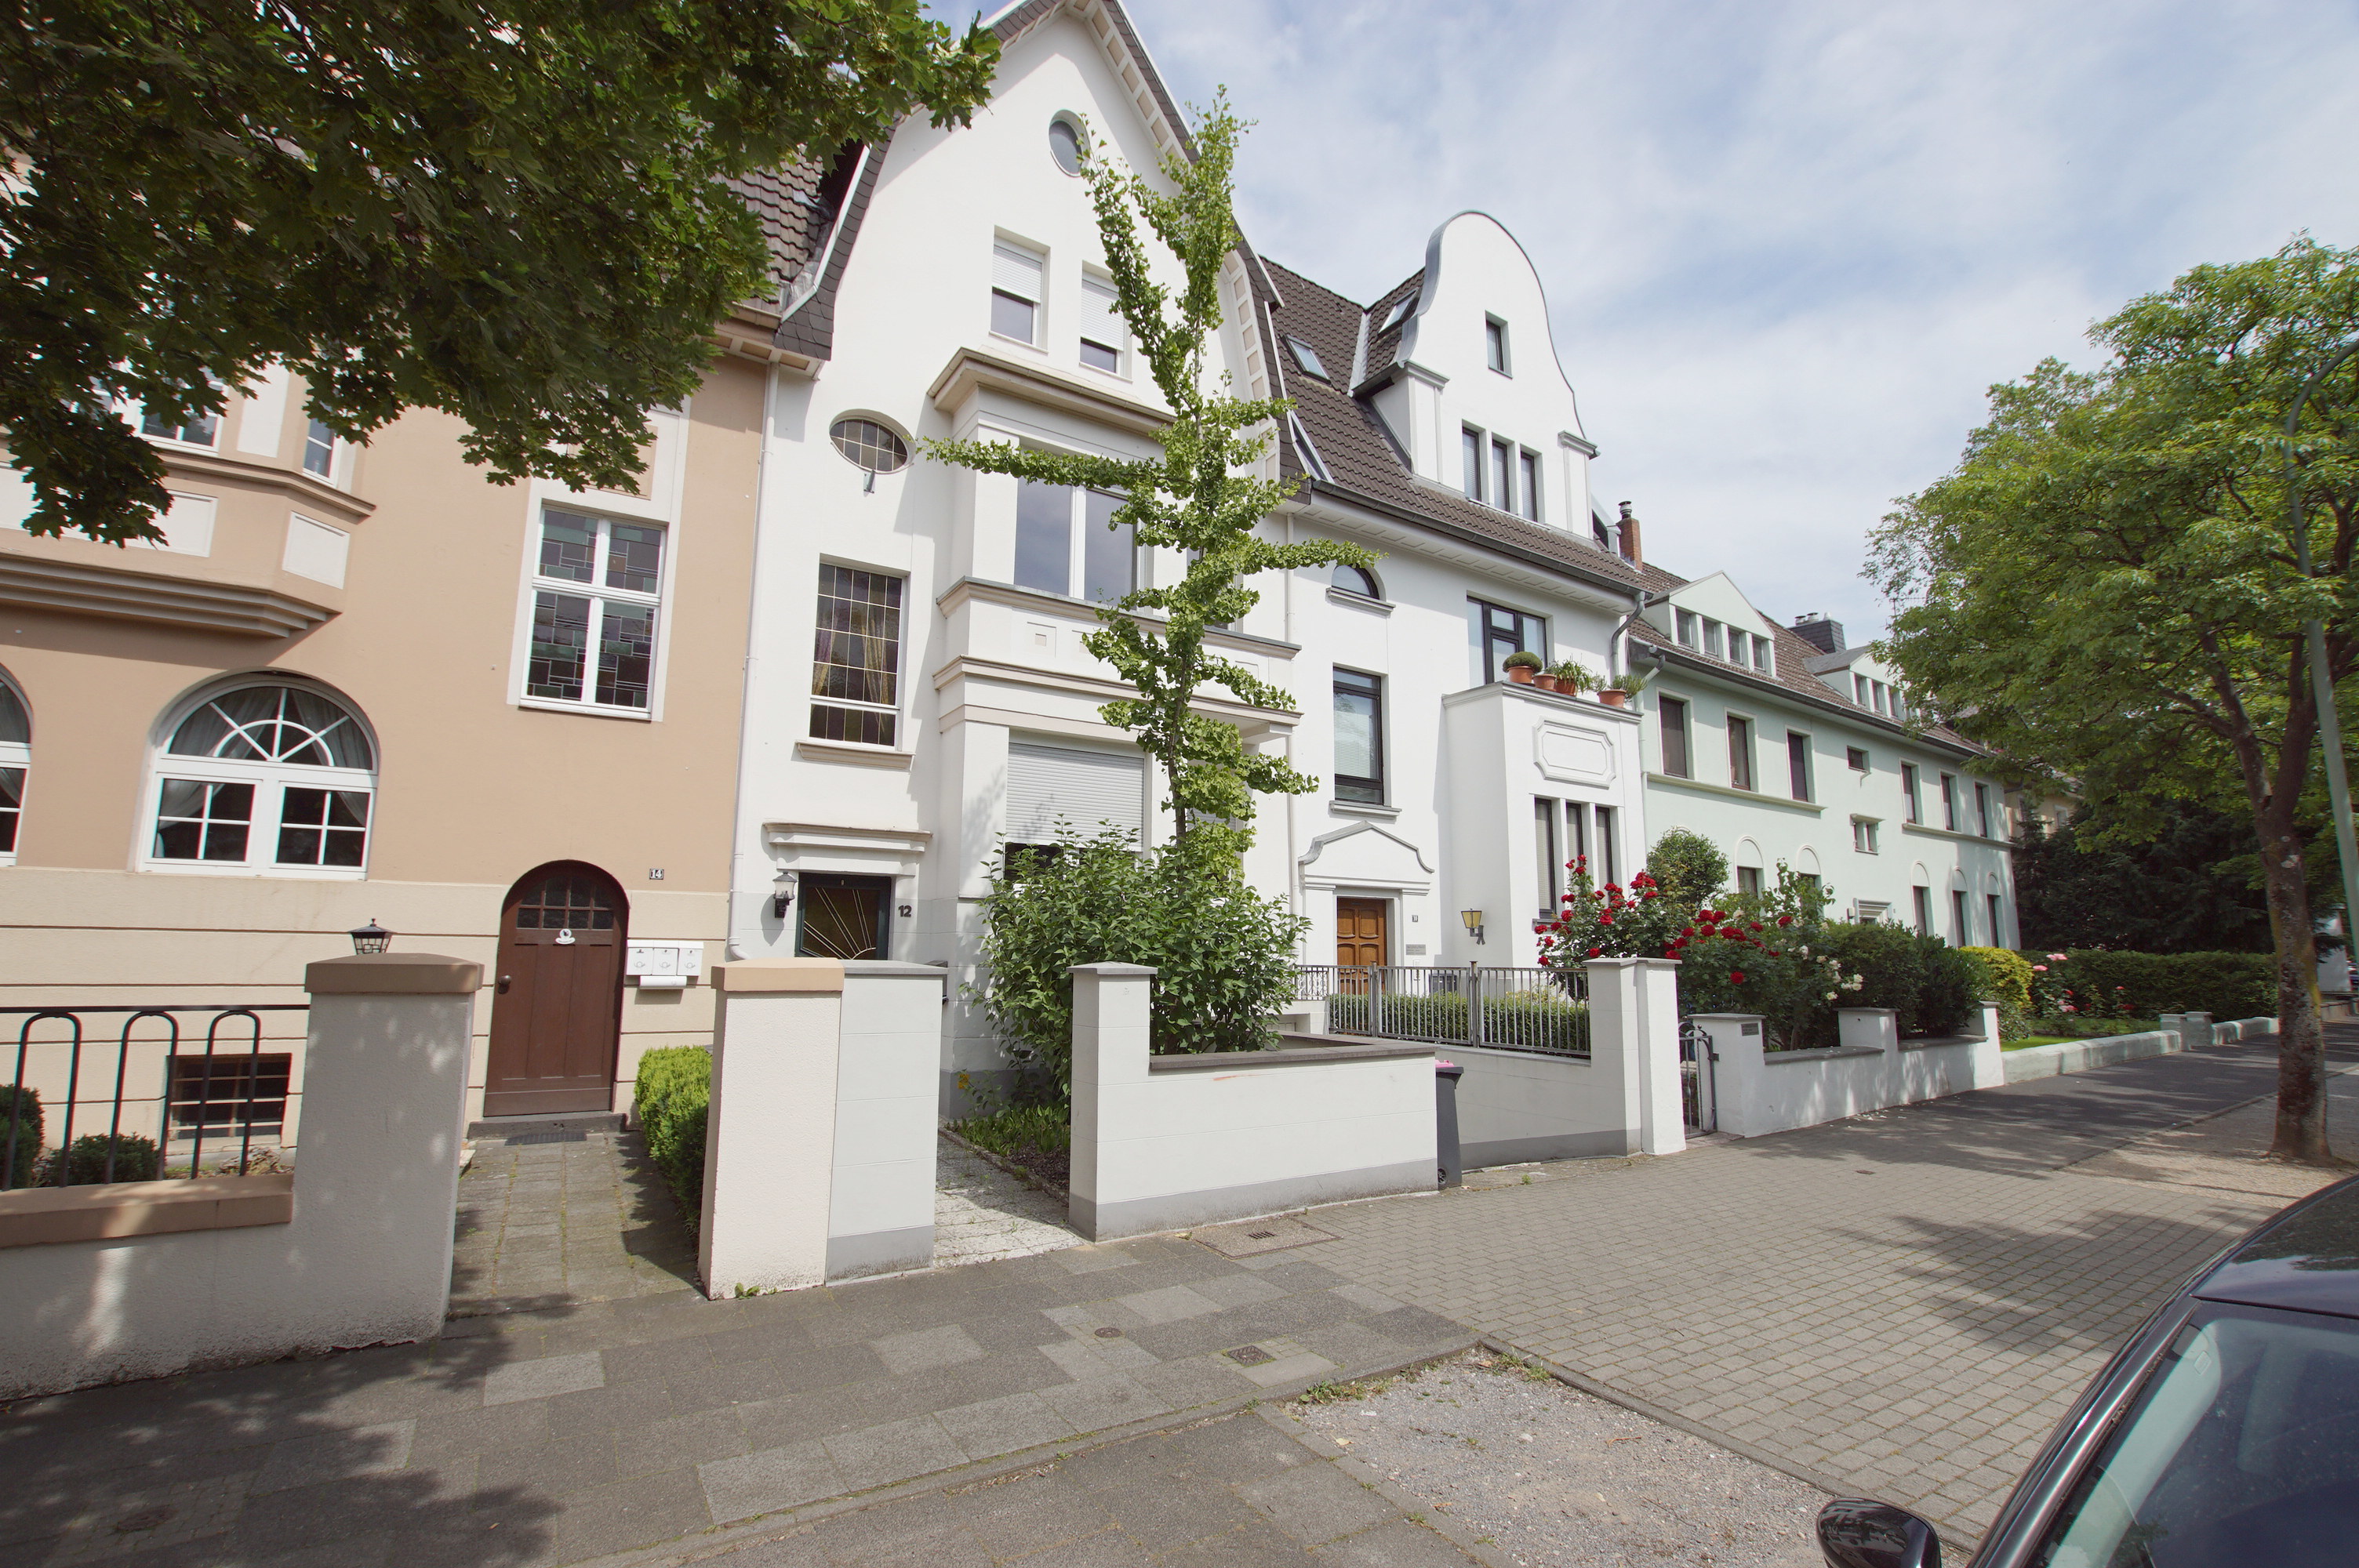 Verkauft! Neuss-Furth: Mächtiges Einfamilien-Stadthaus mit Garage und Garten